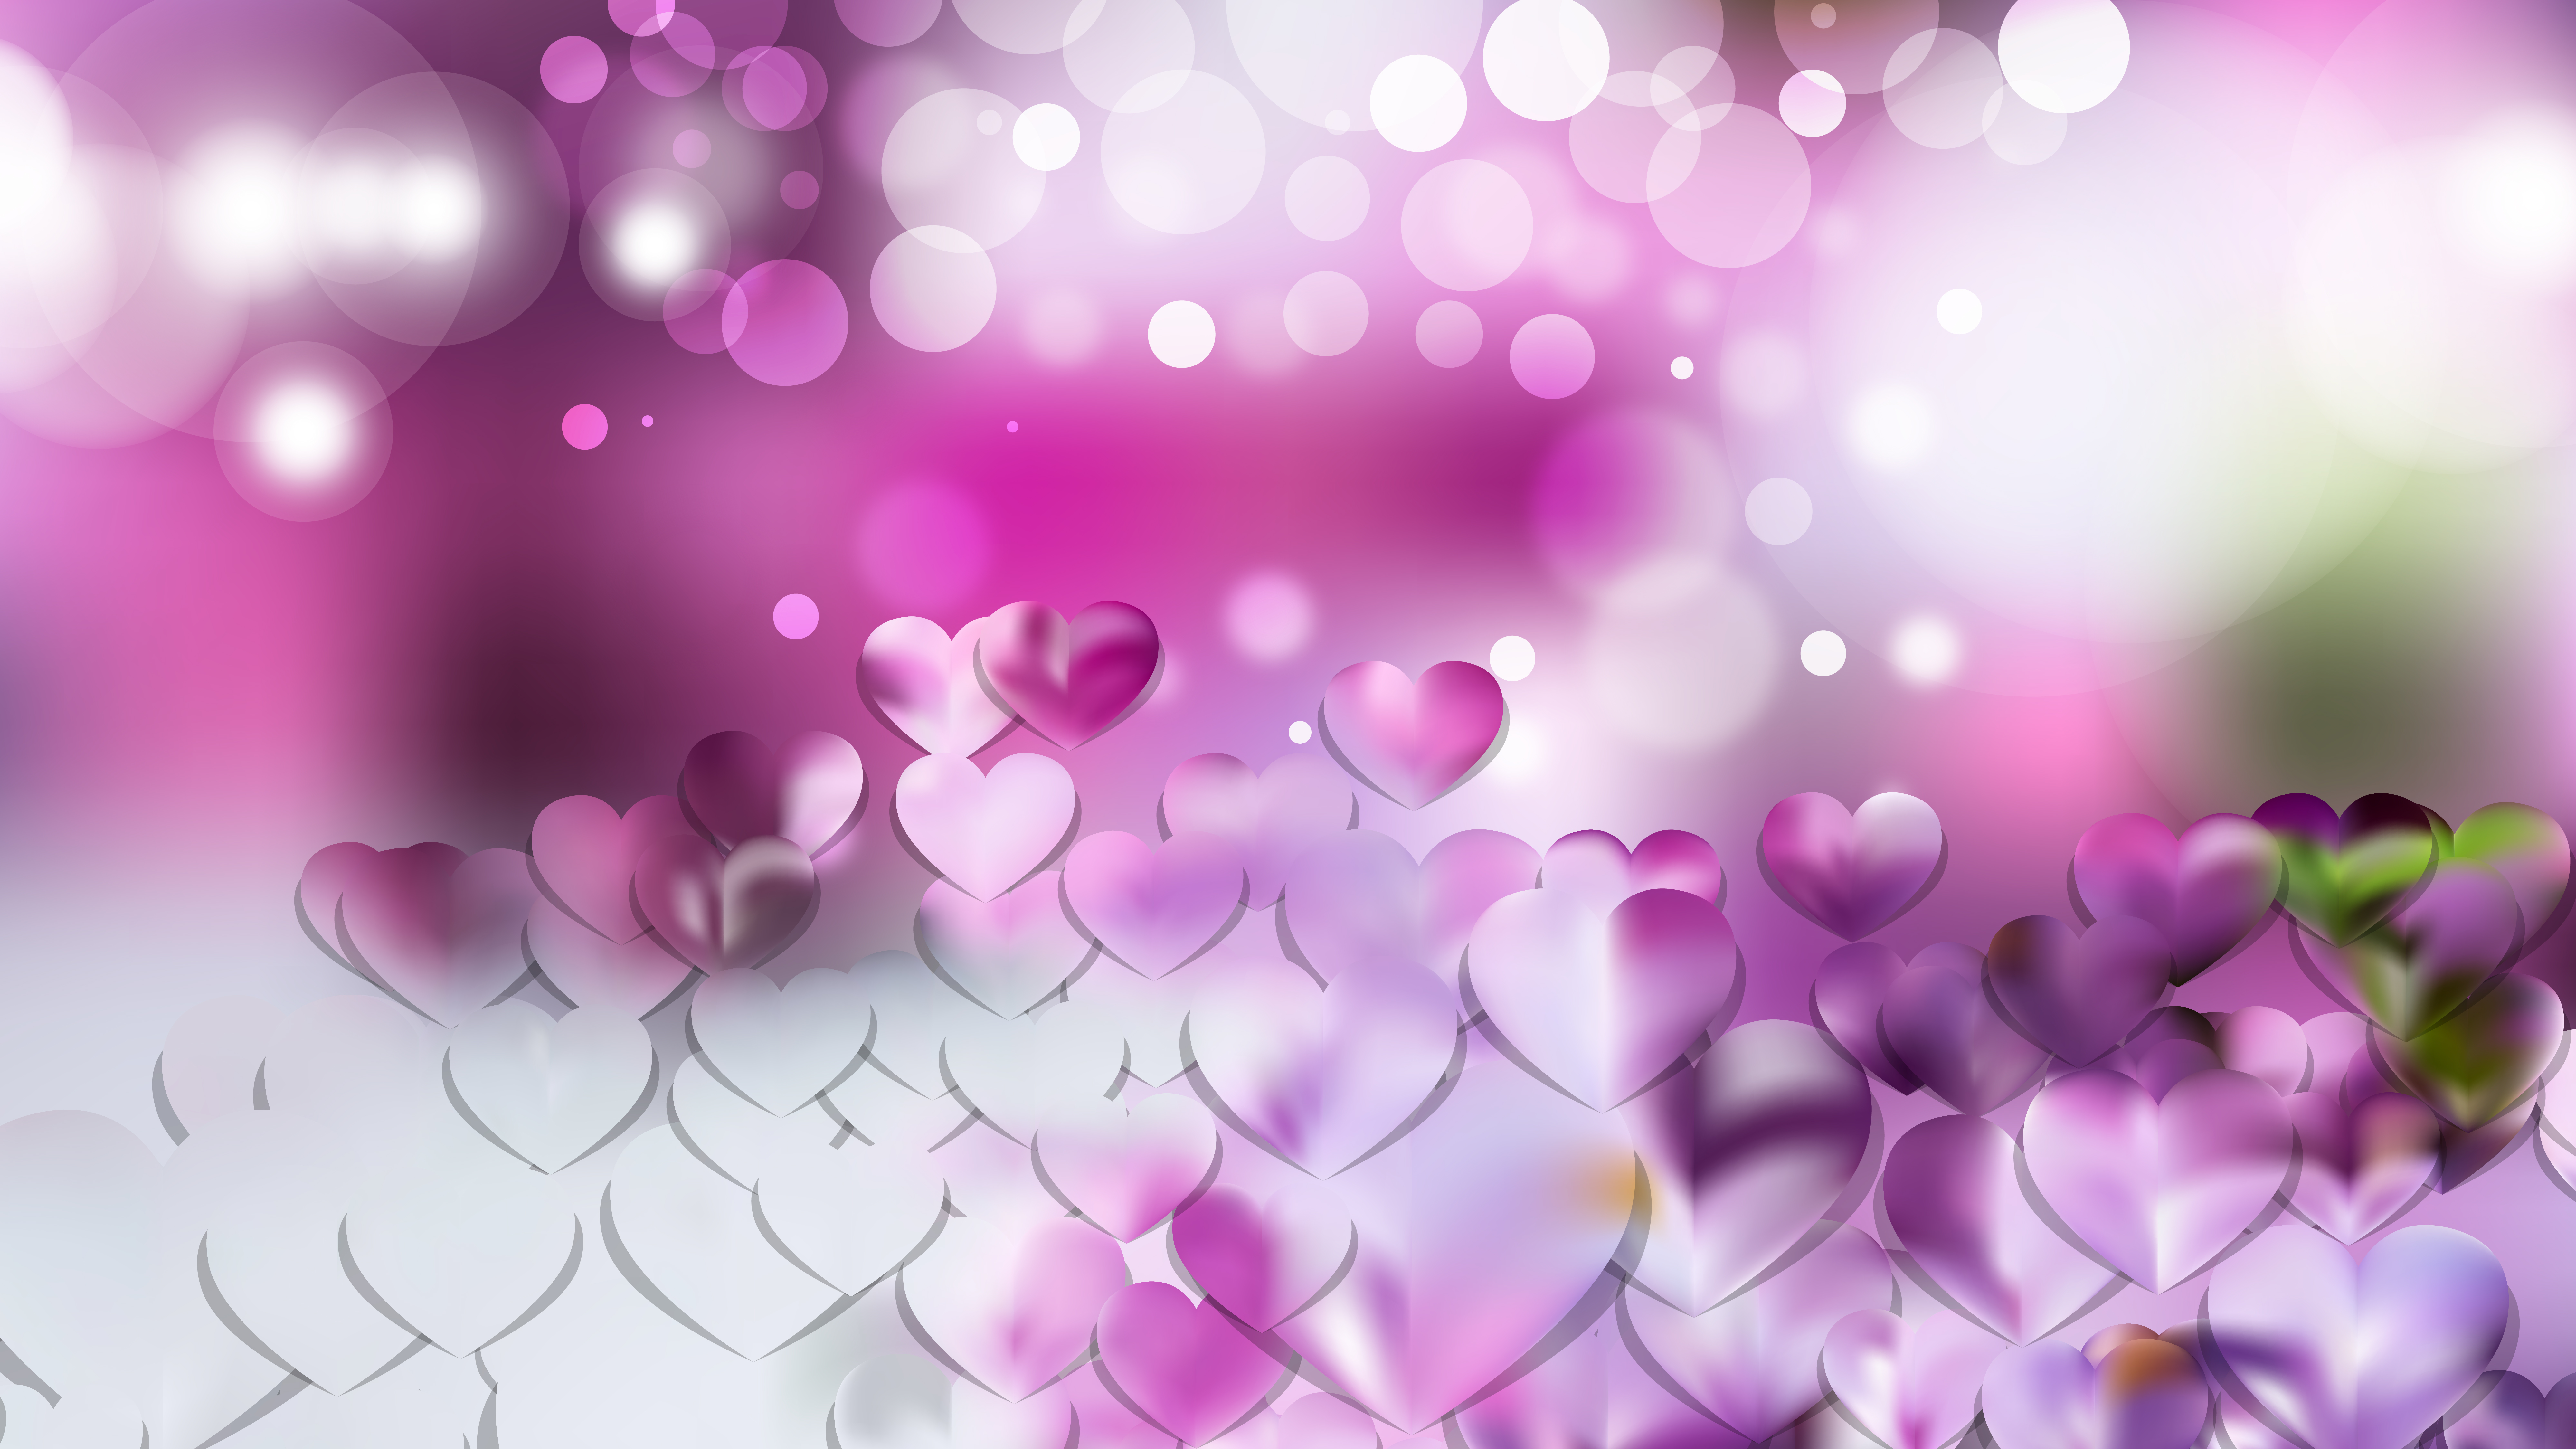 Free Light Purple Heart Wallpaper Background